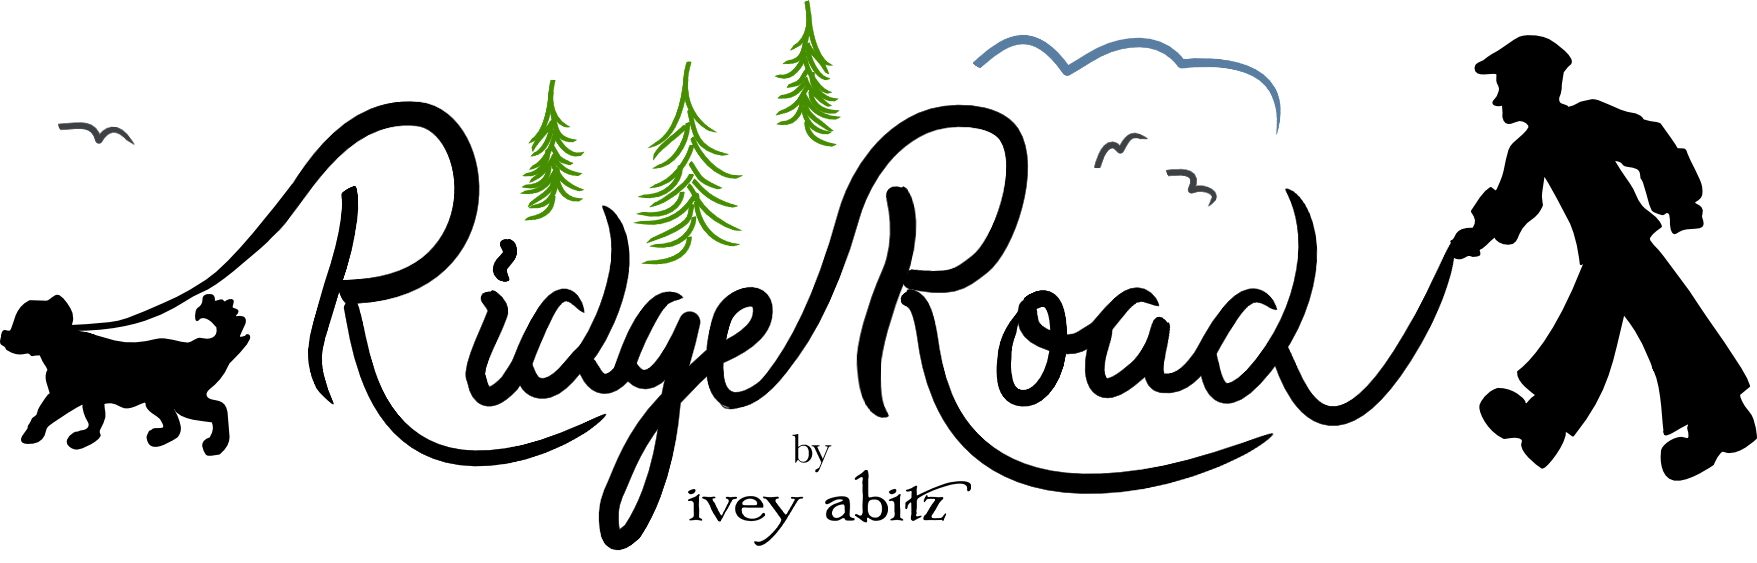 Ridge Road Banner Logo